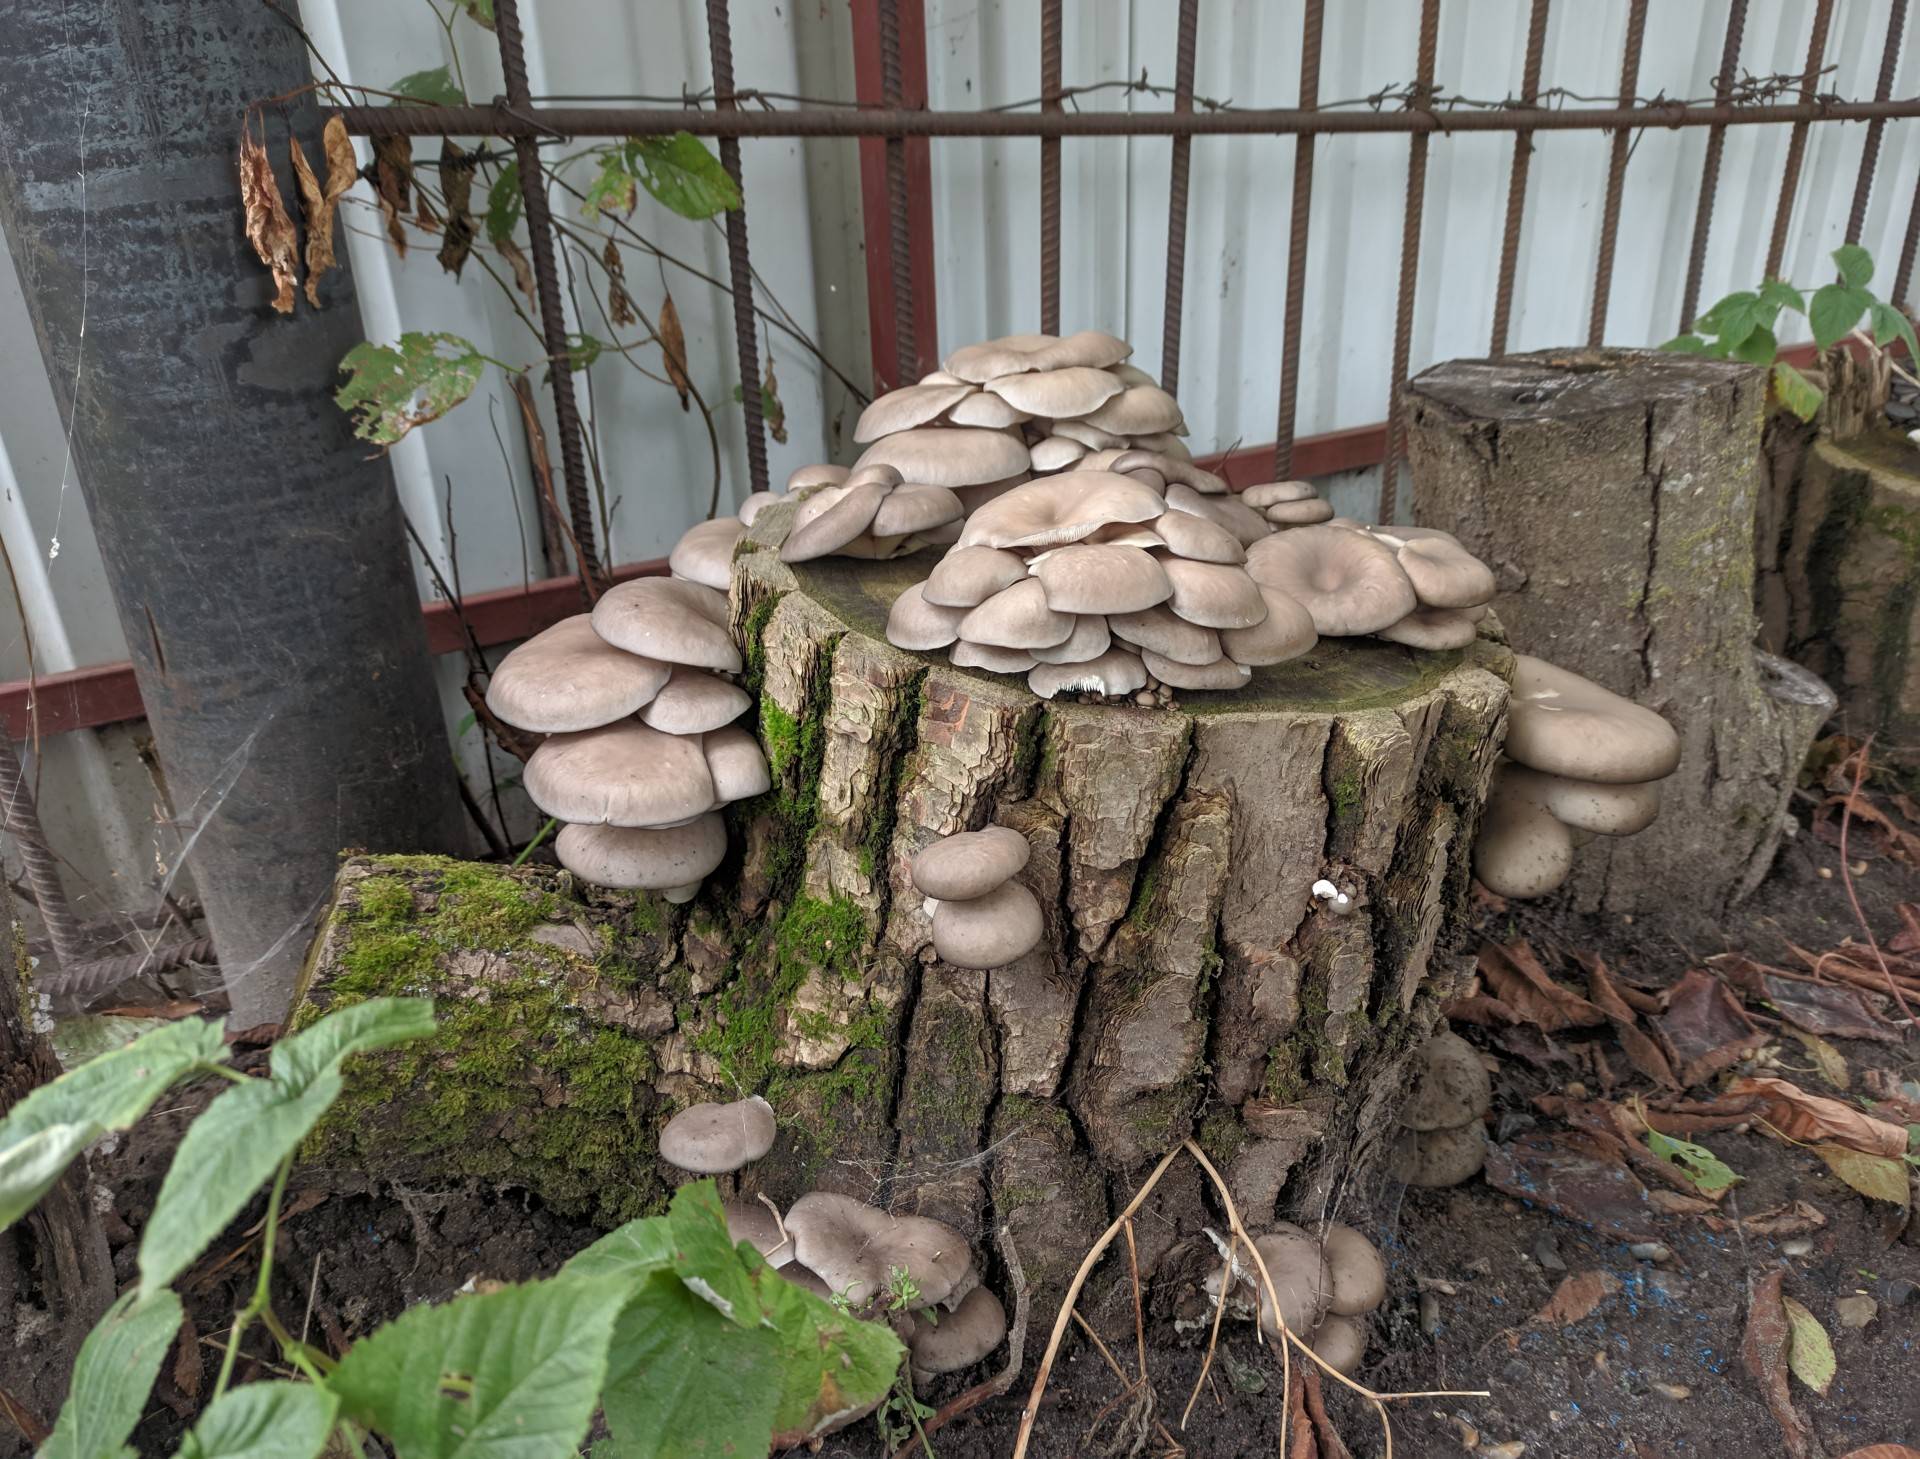 Какие грибы можно выращивать в искусственных условиях: фото, видео, как это делать на садовом участке